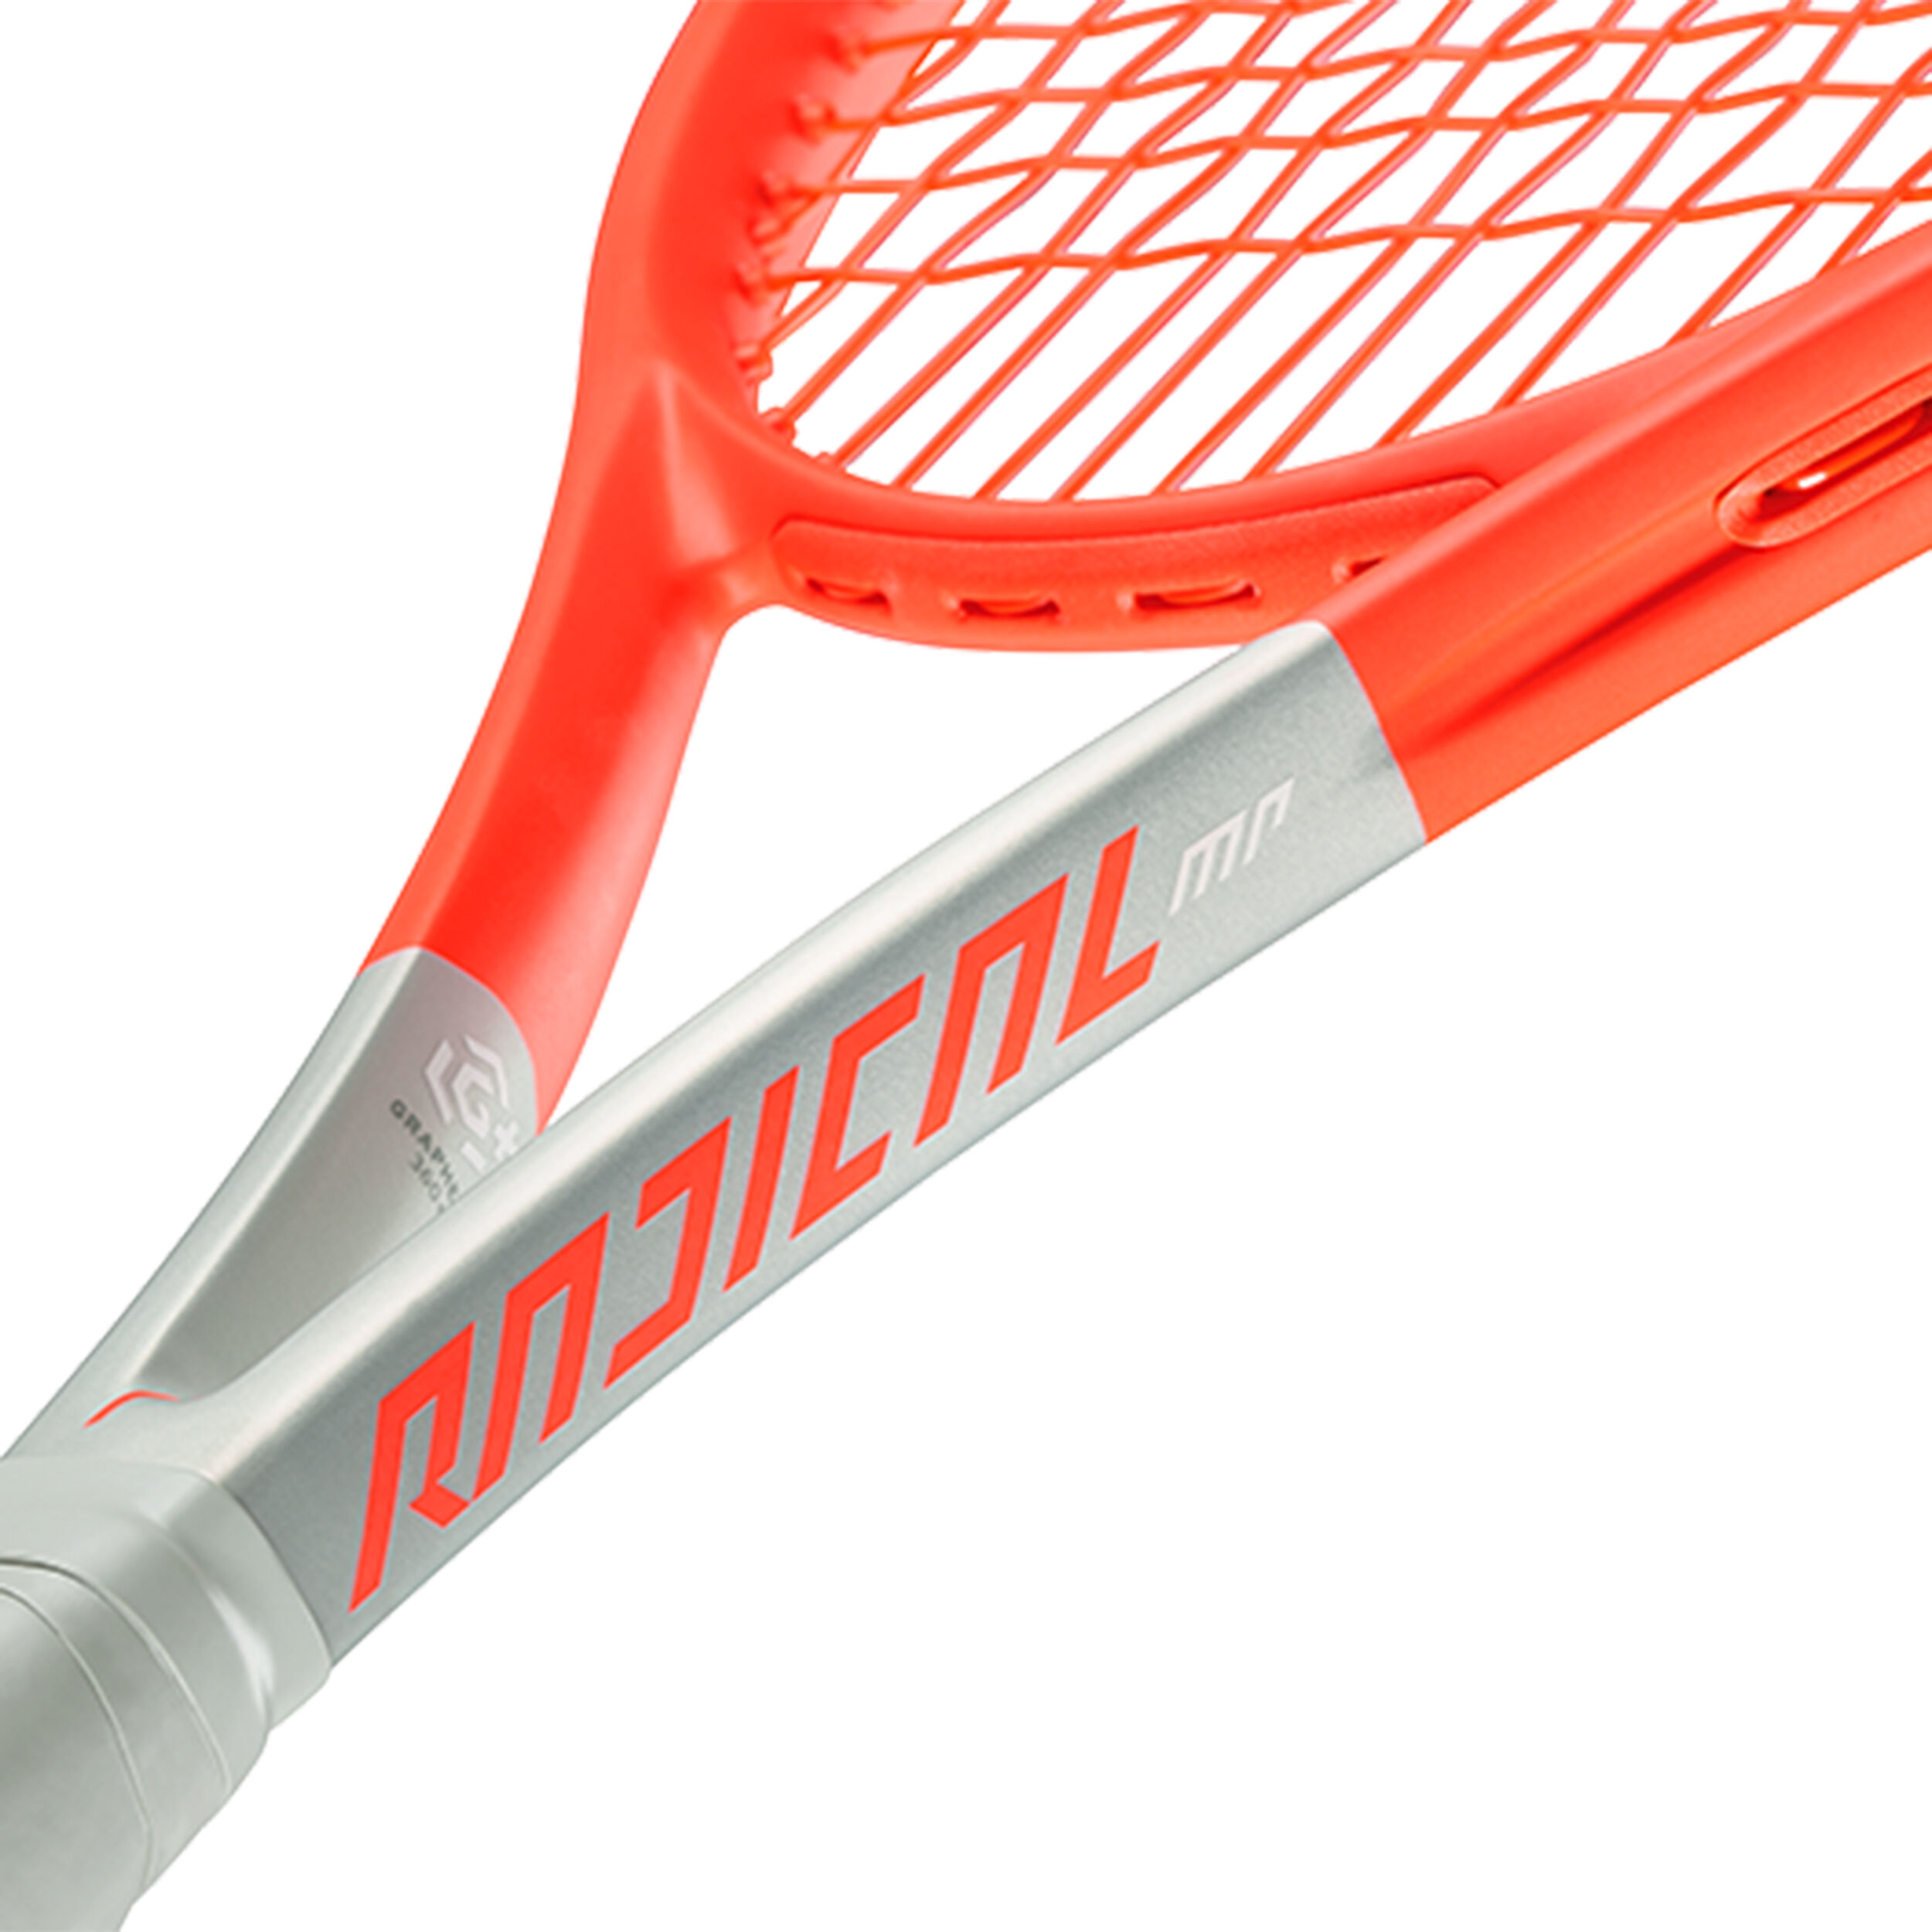 280g Tennisschläger mit Besaitung Neu: HEAD Graphene+ 360 Radical S 2021 